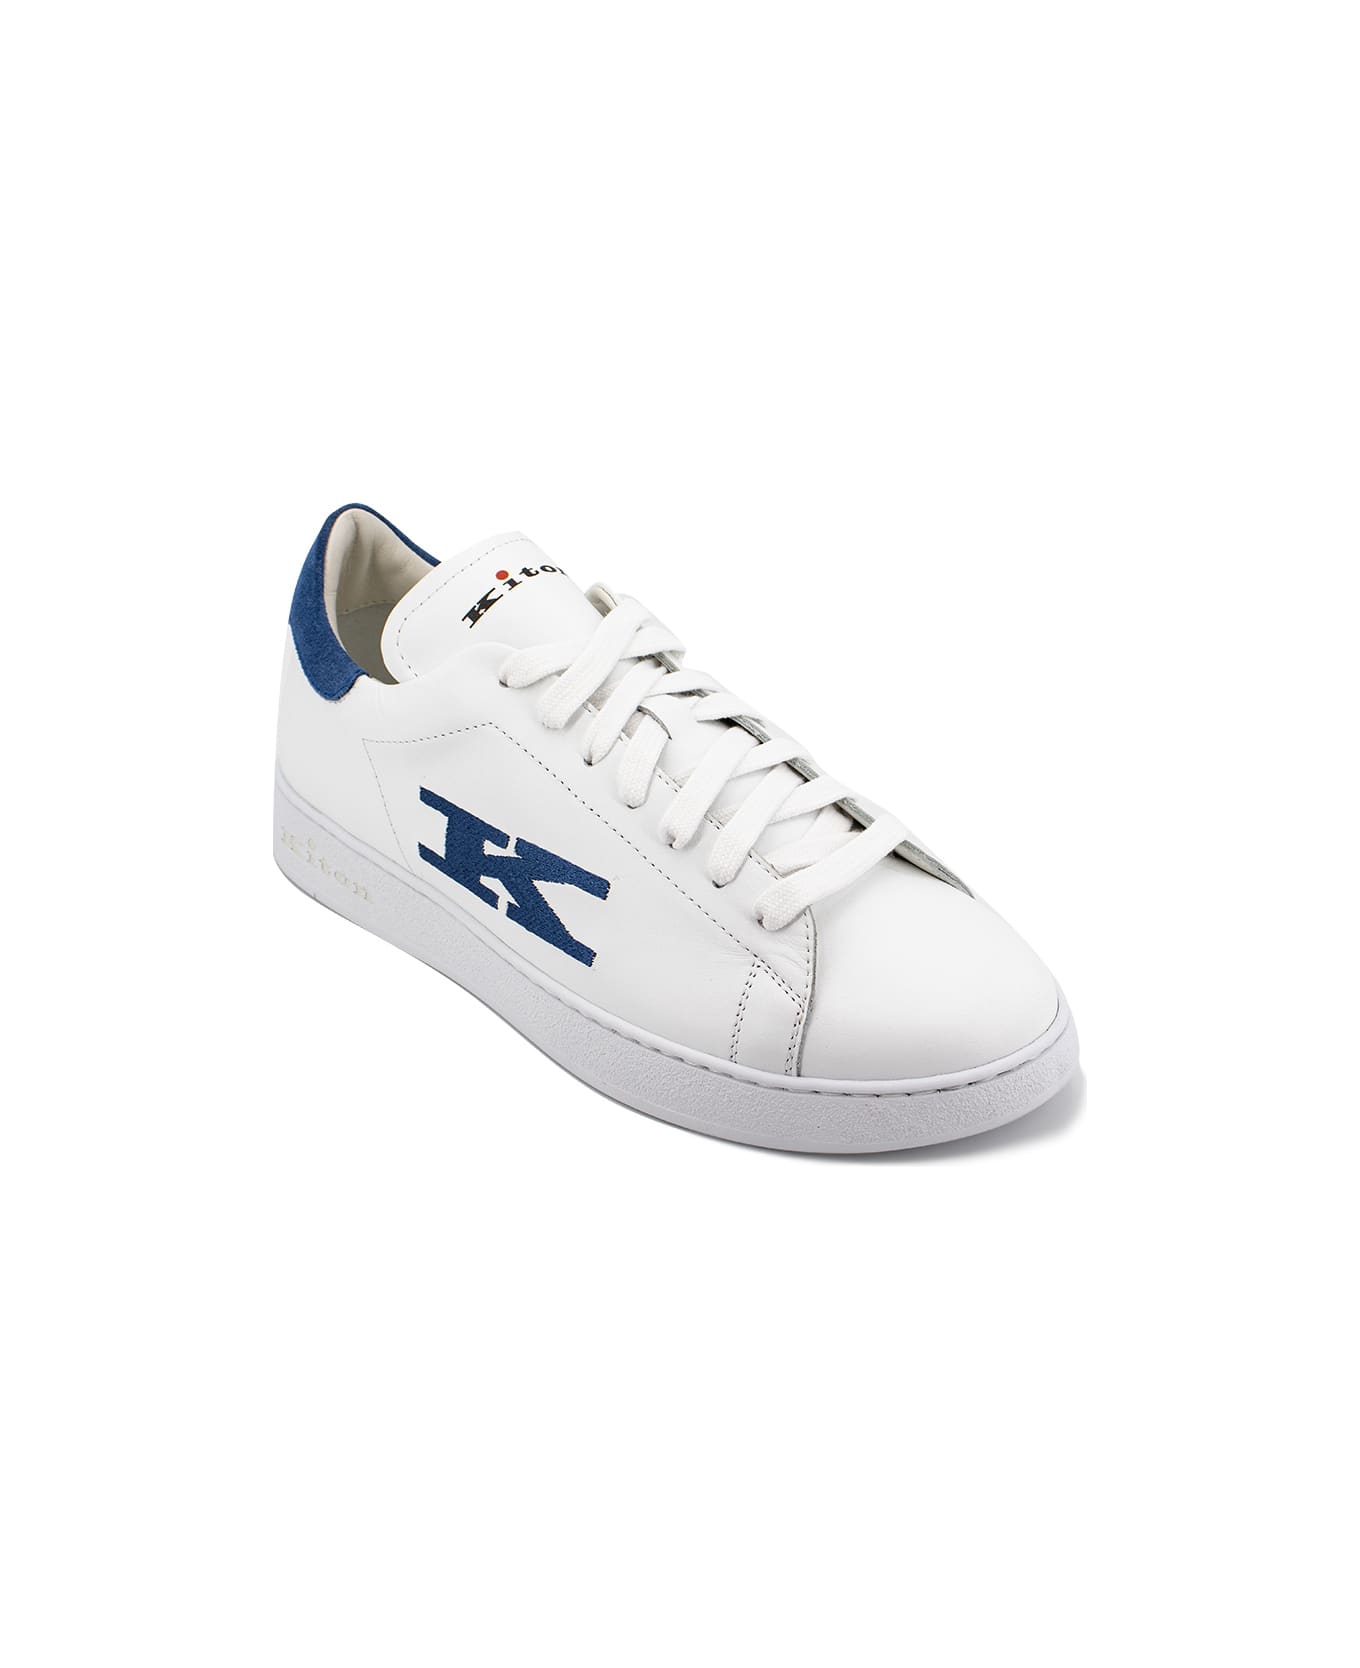 Kiton Sneakers - WHITE  LIGHT BLUE